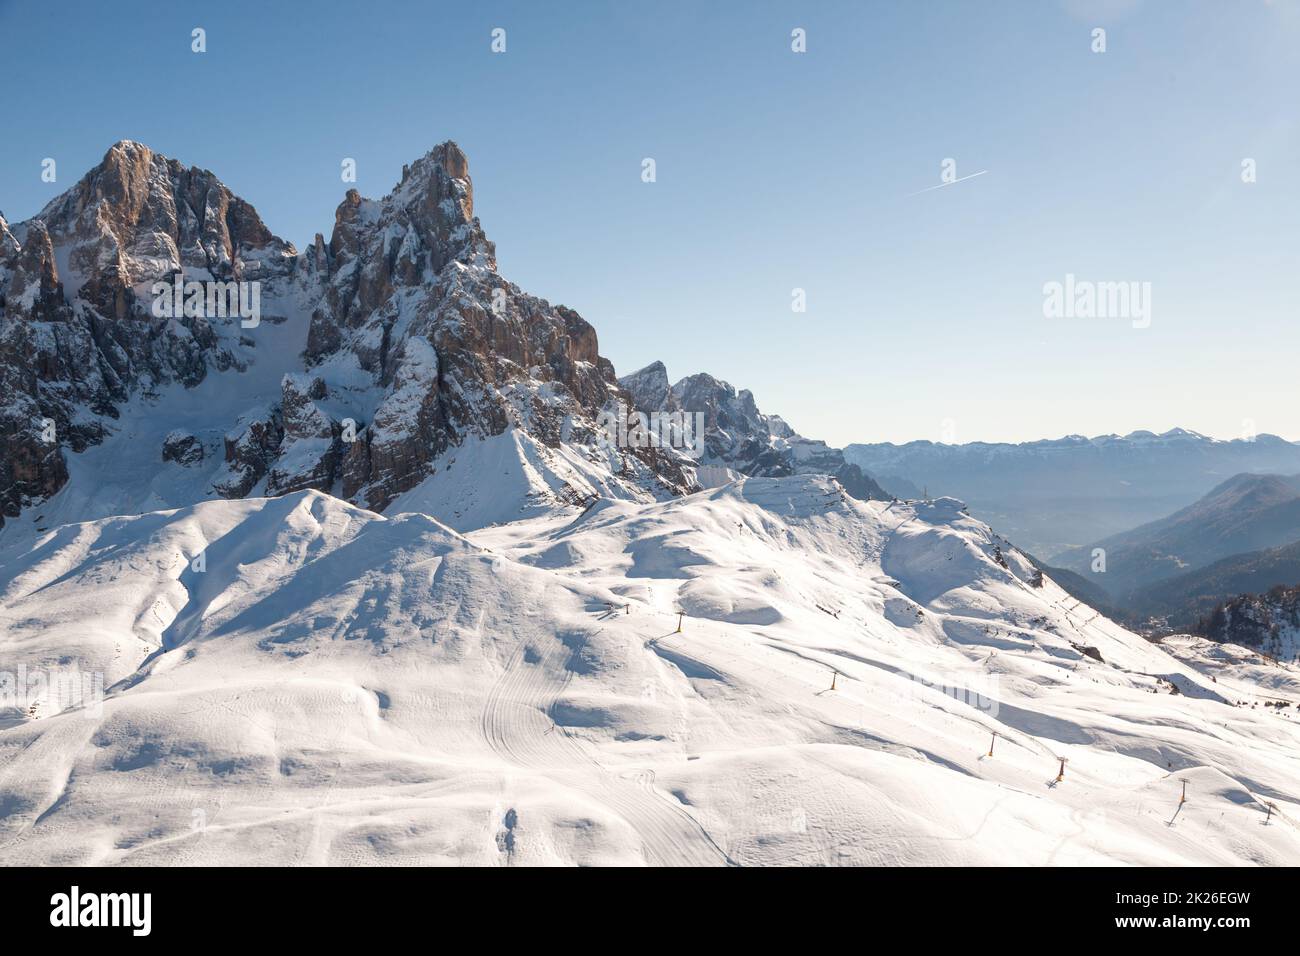 Rolle pass winter view, San martino di Castrozza, Italy. Cimon della Pala peak view. Stock Photo